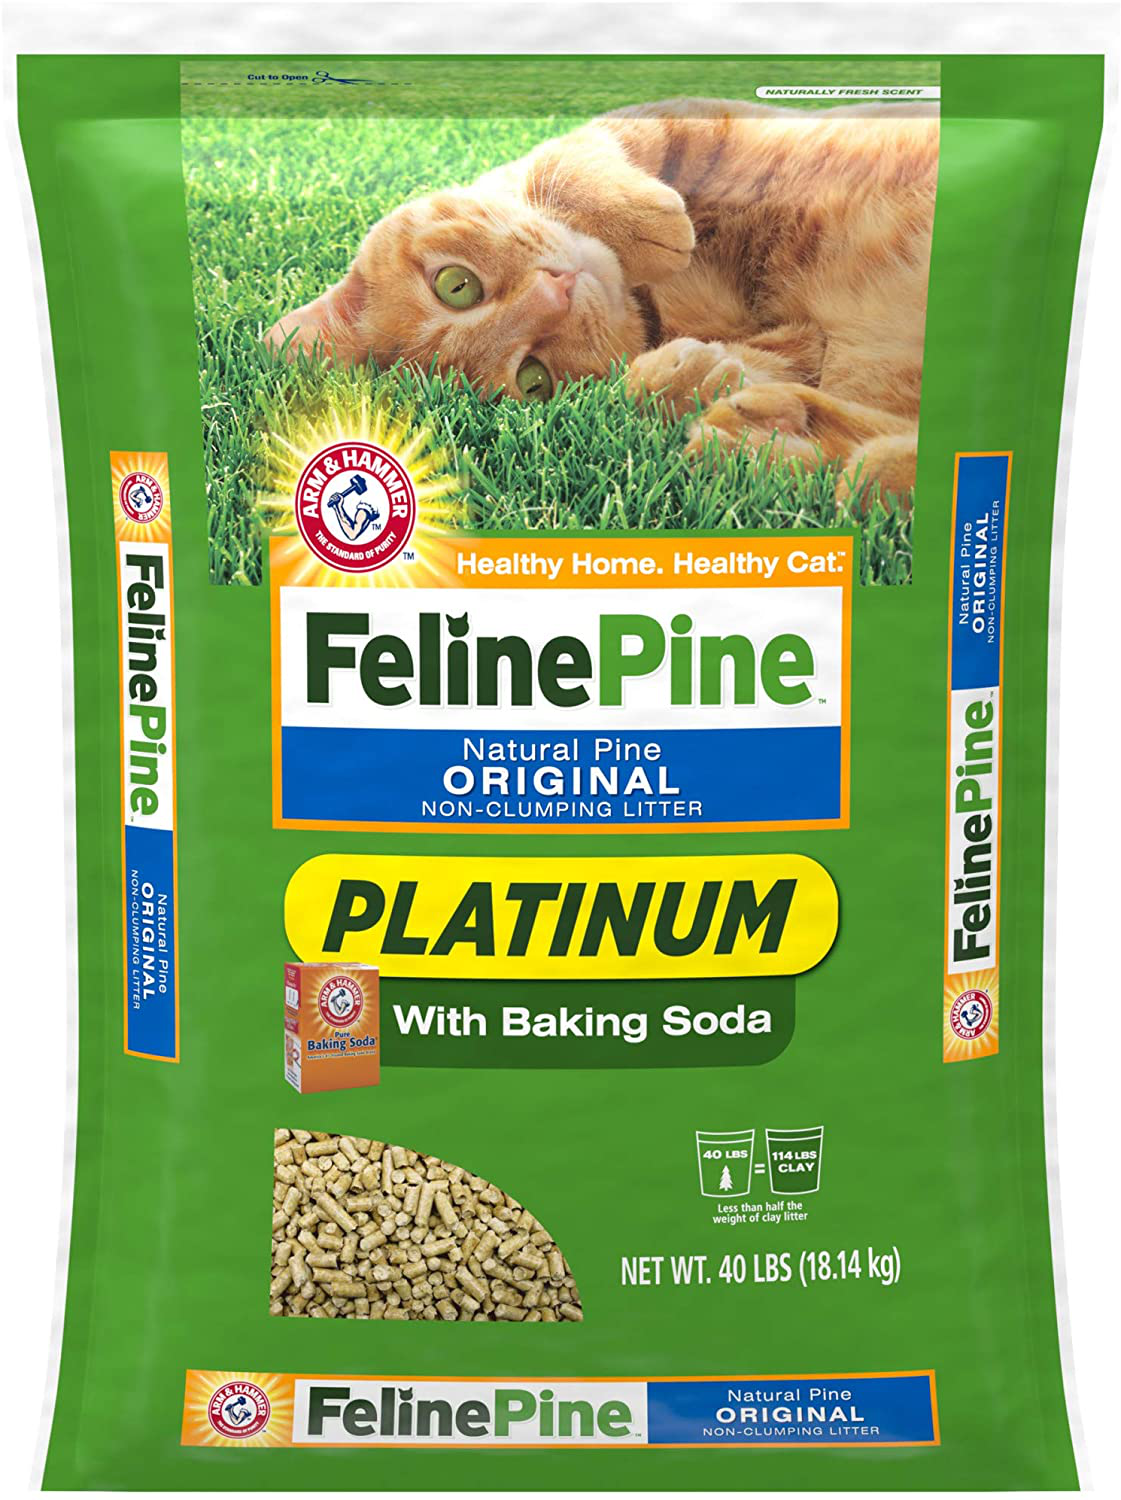 Feline Pine Cat Litter Animals & Pet Supplies > Pet Supplies > Cat Supplies > Cat Litter Feline Pine   